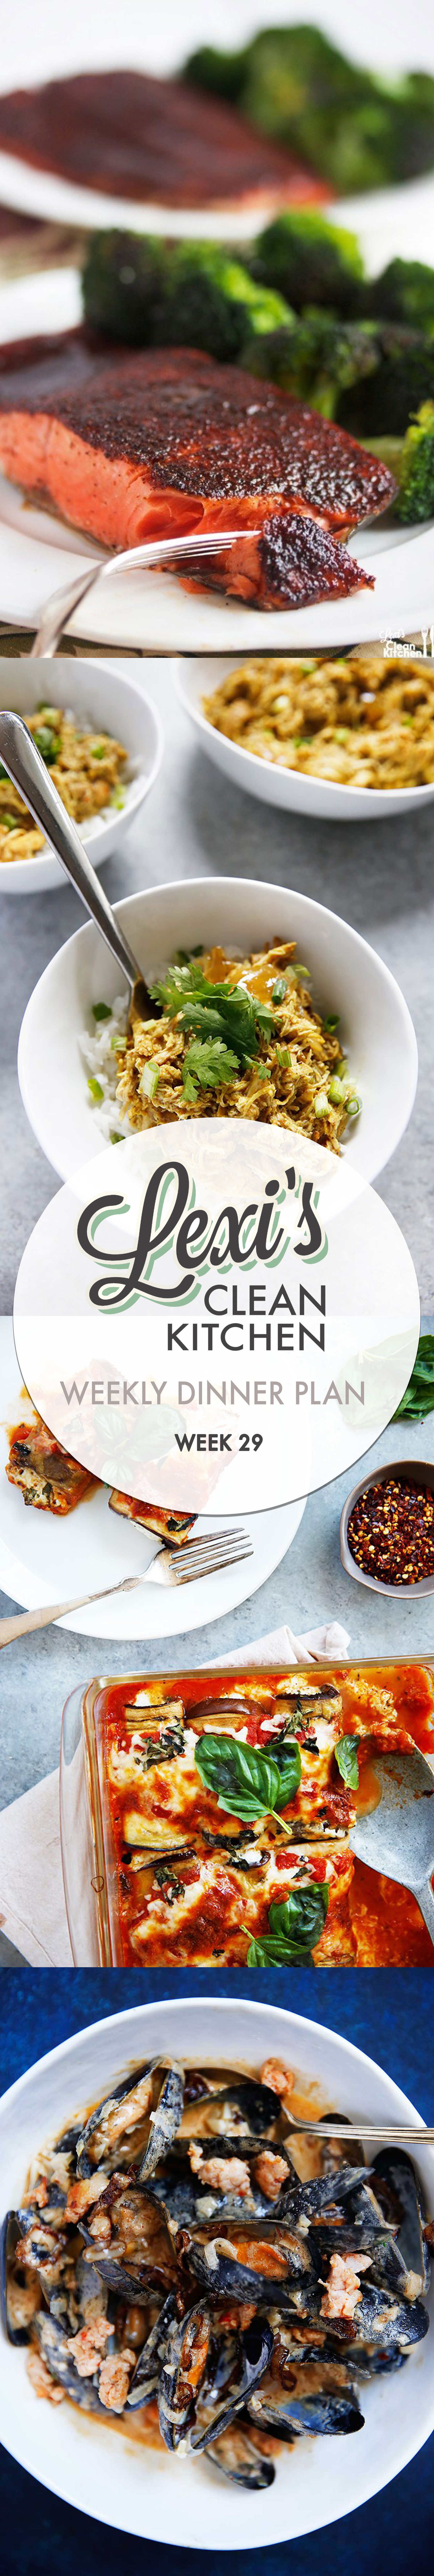 lexi’s weekly dinner plan week 29